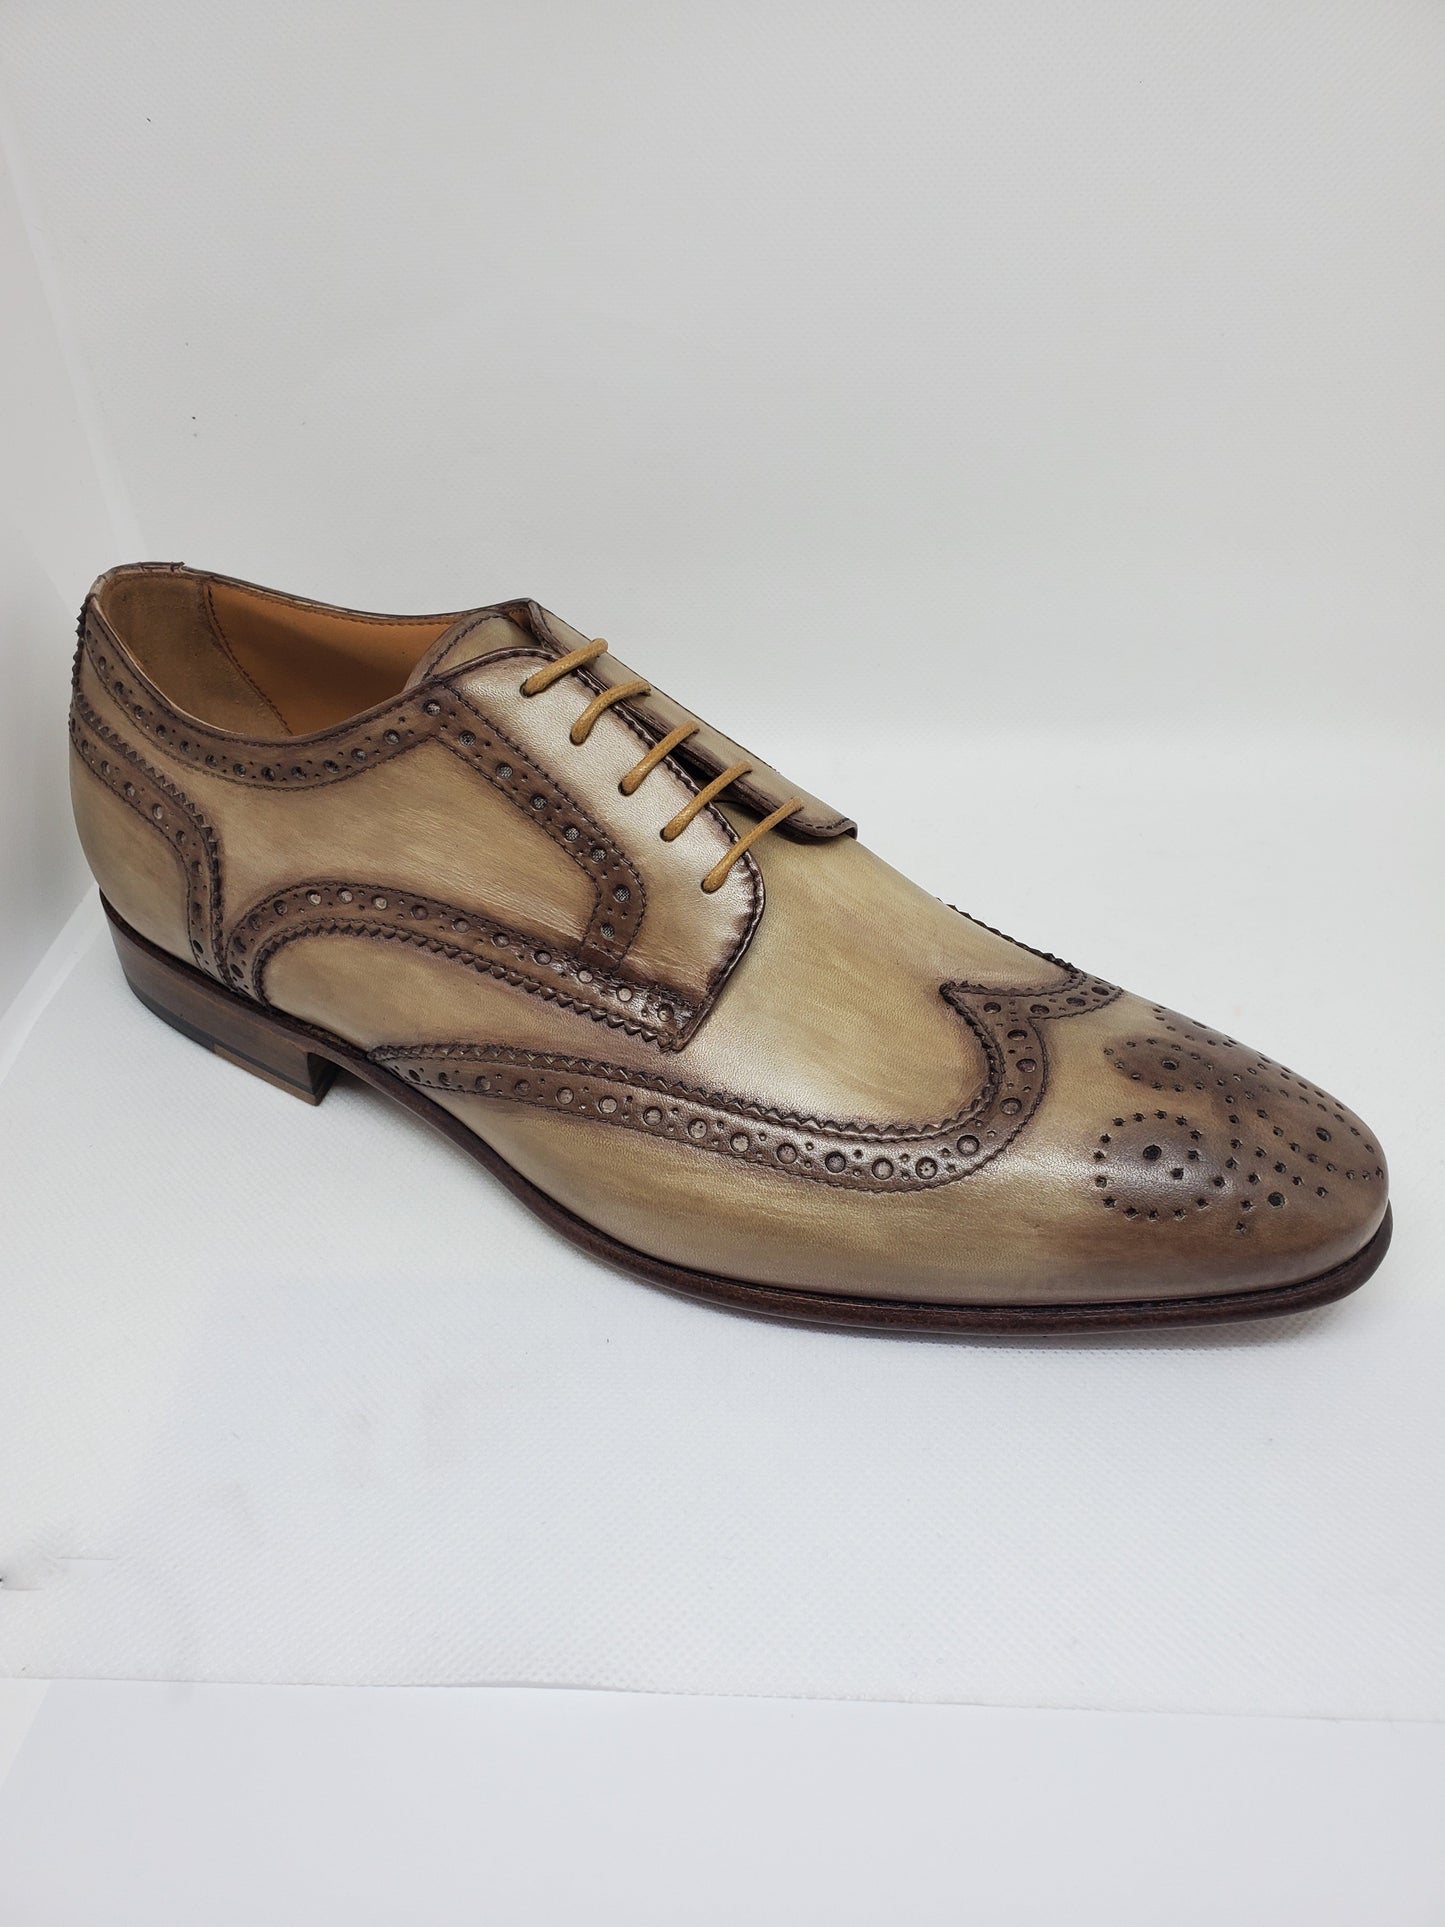 Classic Derby Shoe - Antiqued Crust Calfskin Leather | Sartoria Dei ...